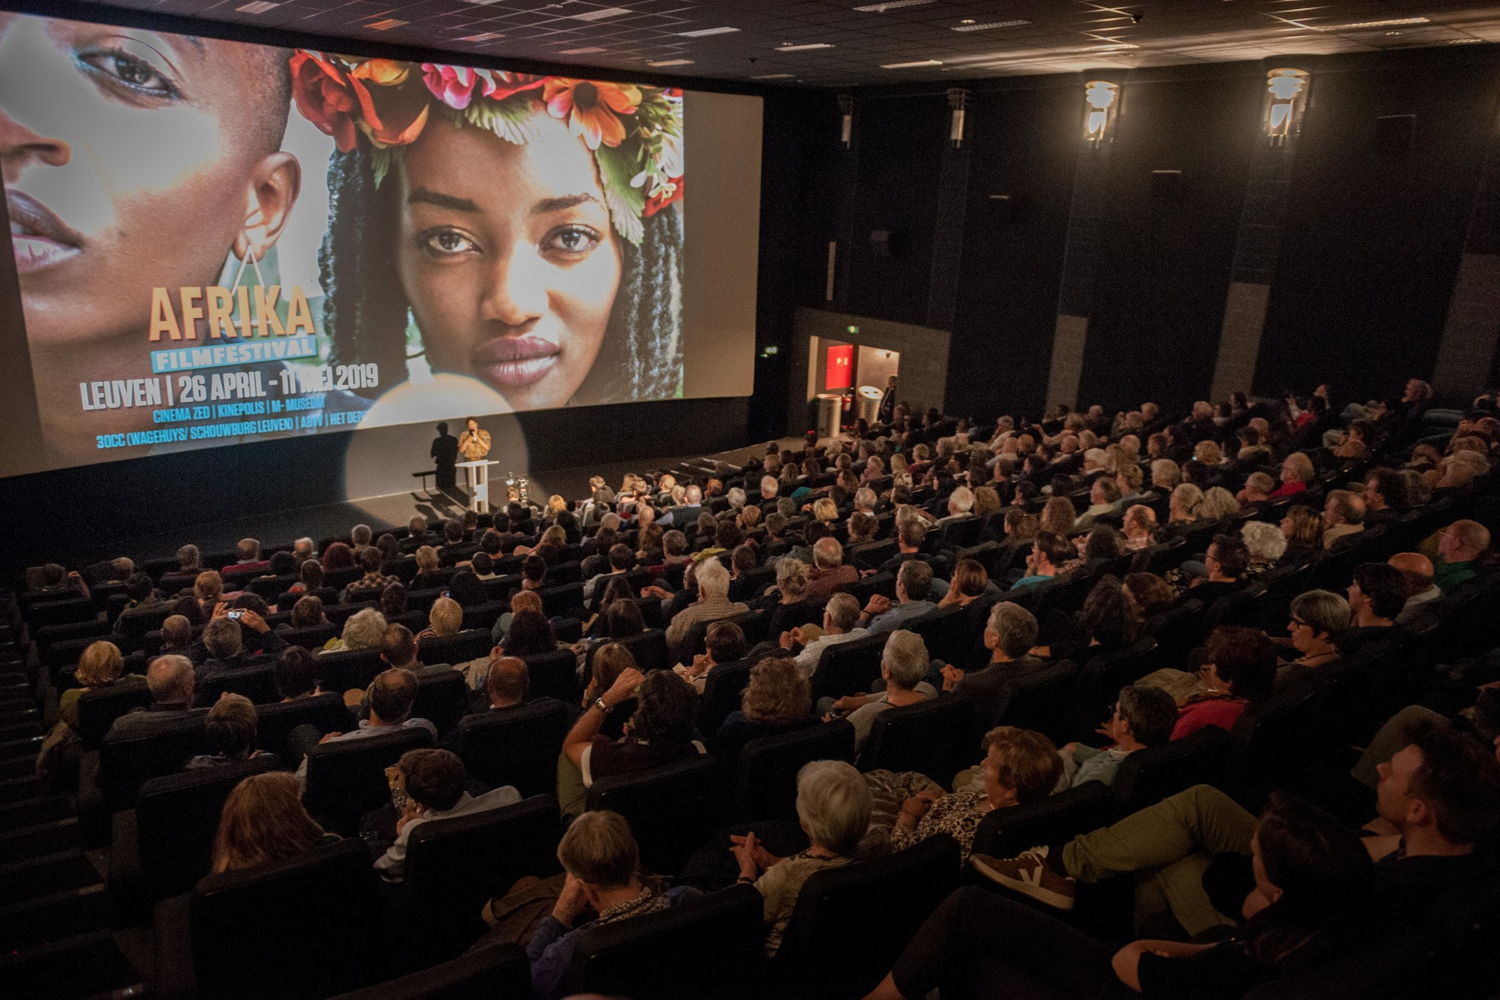 Afrika Filmfestival sleept de Leuvense Prijs voor Culturele Verdienste 2019 in de wacht.
fotograaf Stefaan Cordier